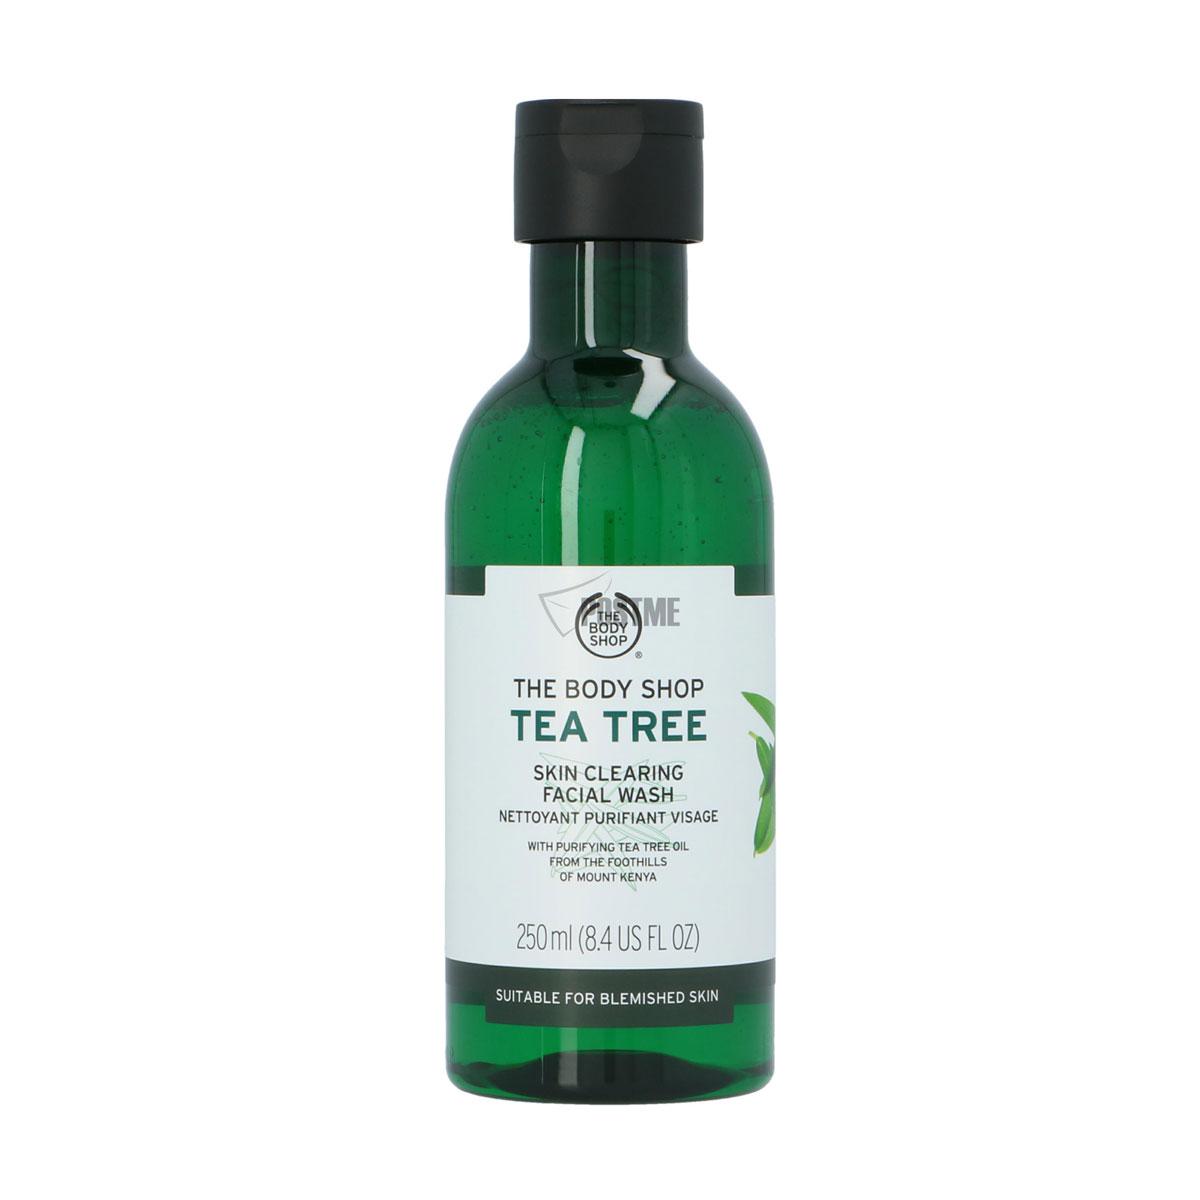 ژل شستشوی صورت تی تری - The Body Shop Tea Tree Skin Clearing Facial Wash 250ml